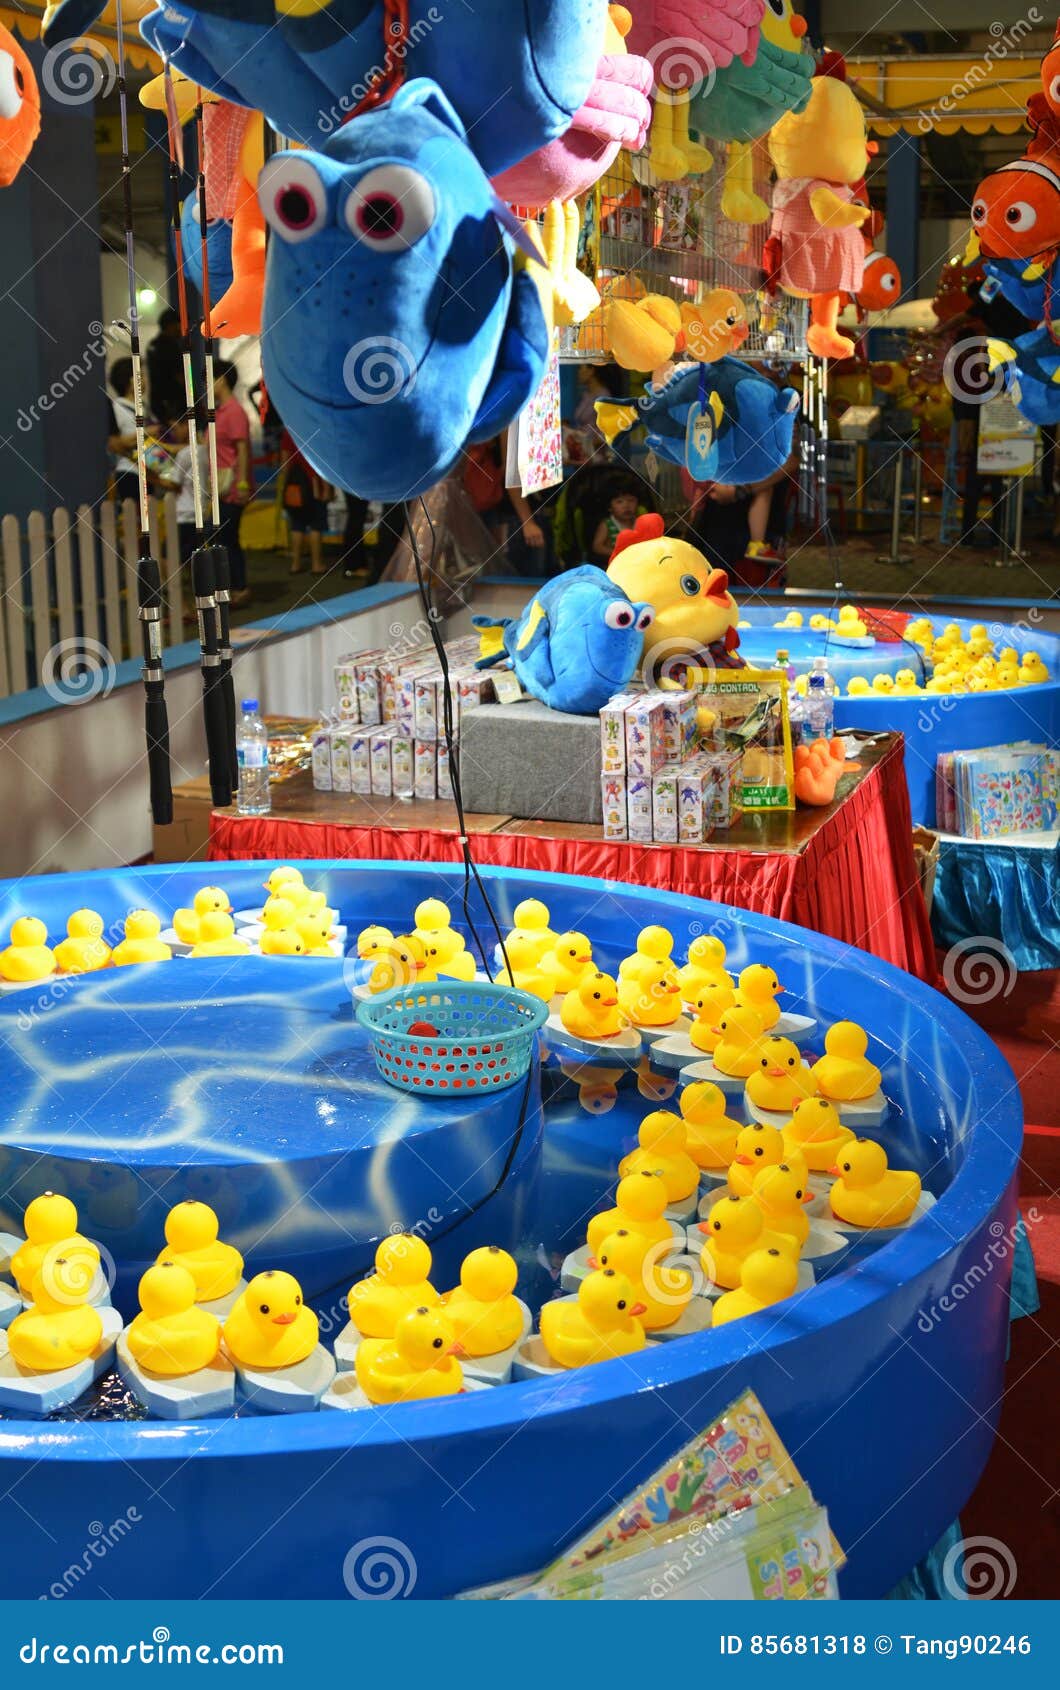 Duck Carnival Game | tyello.com